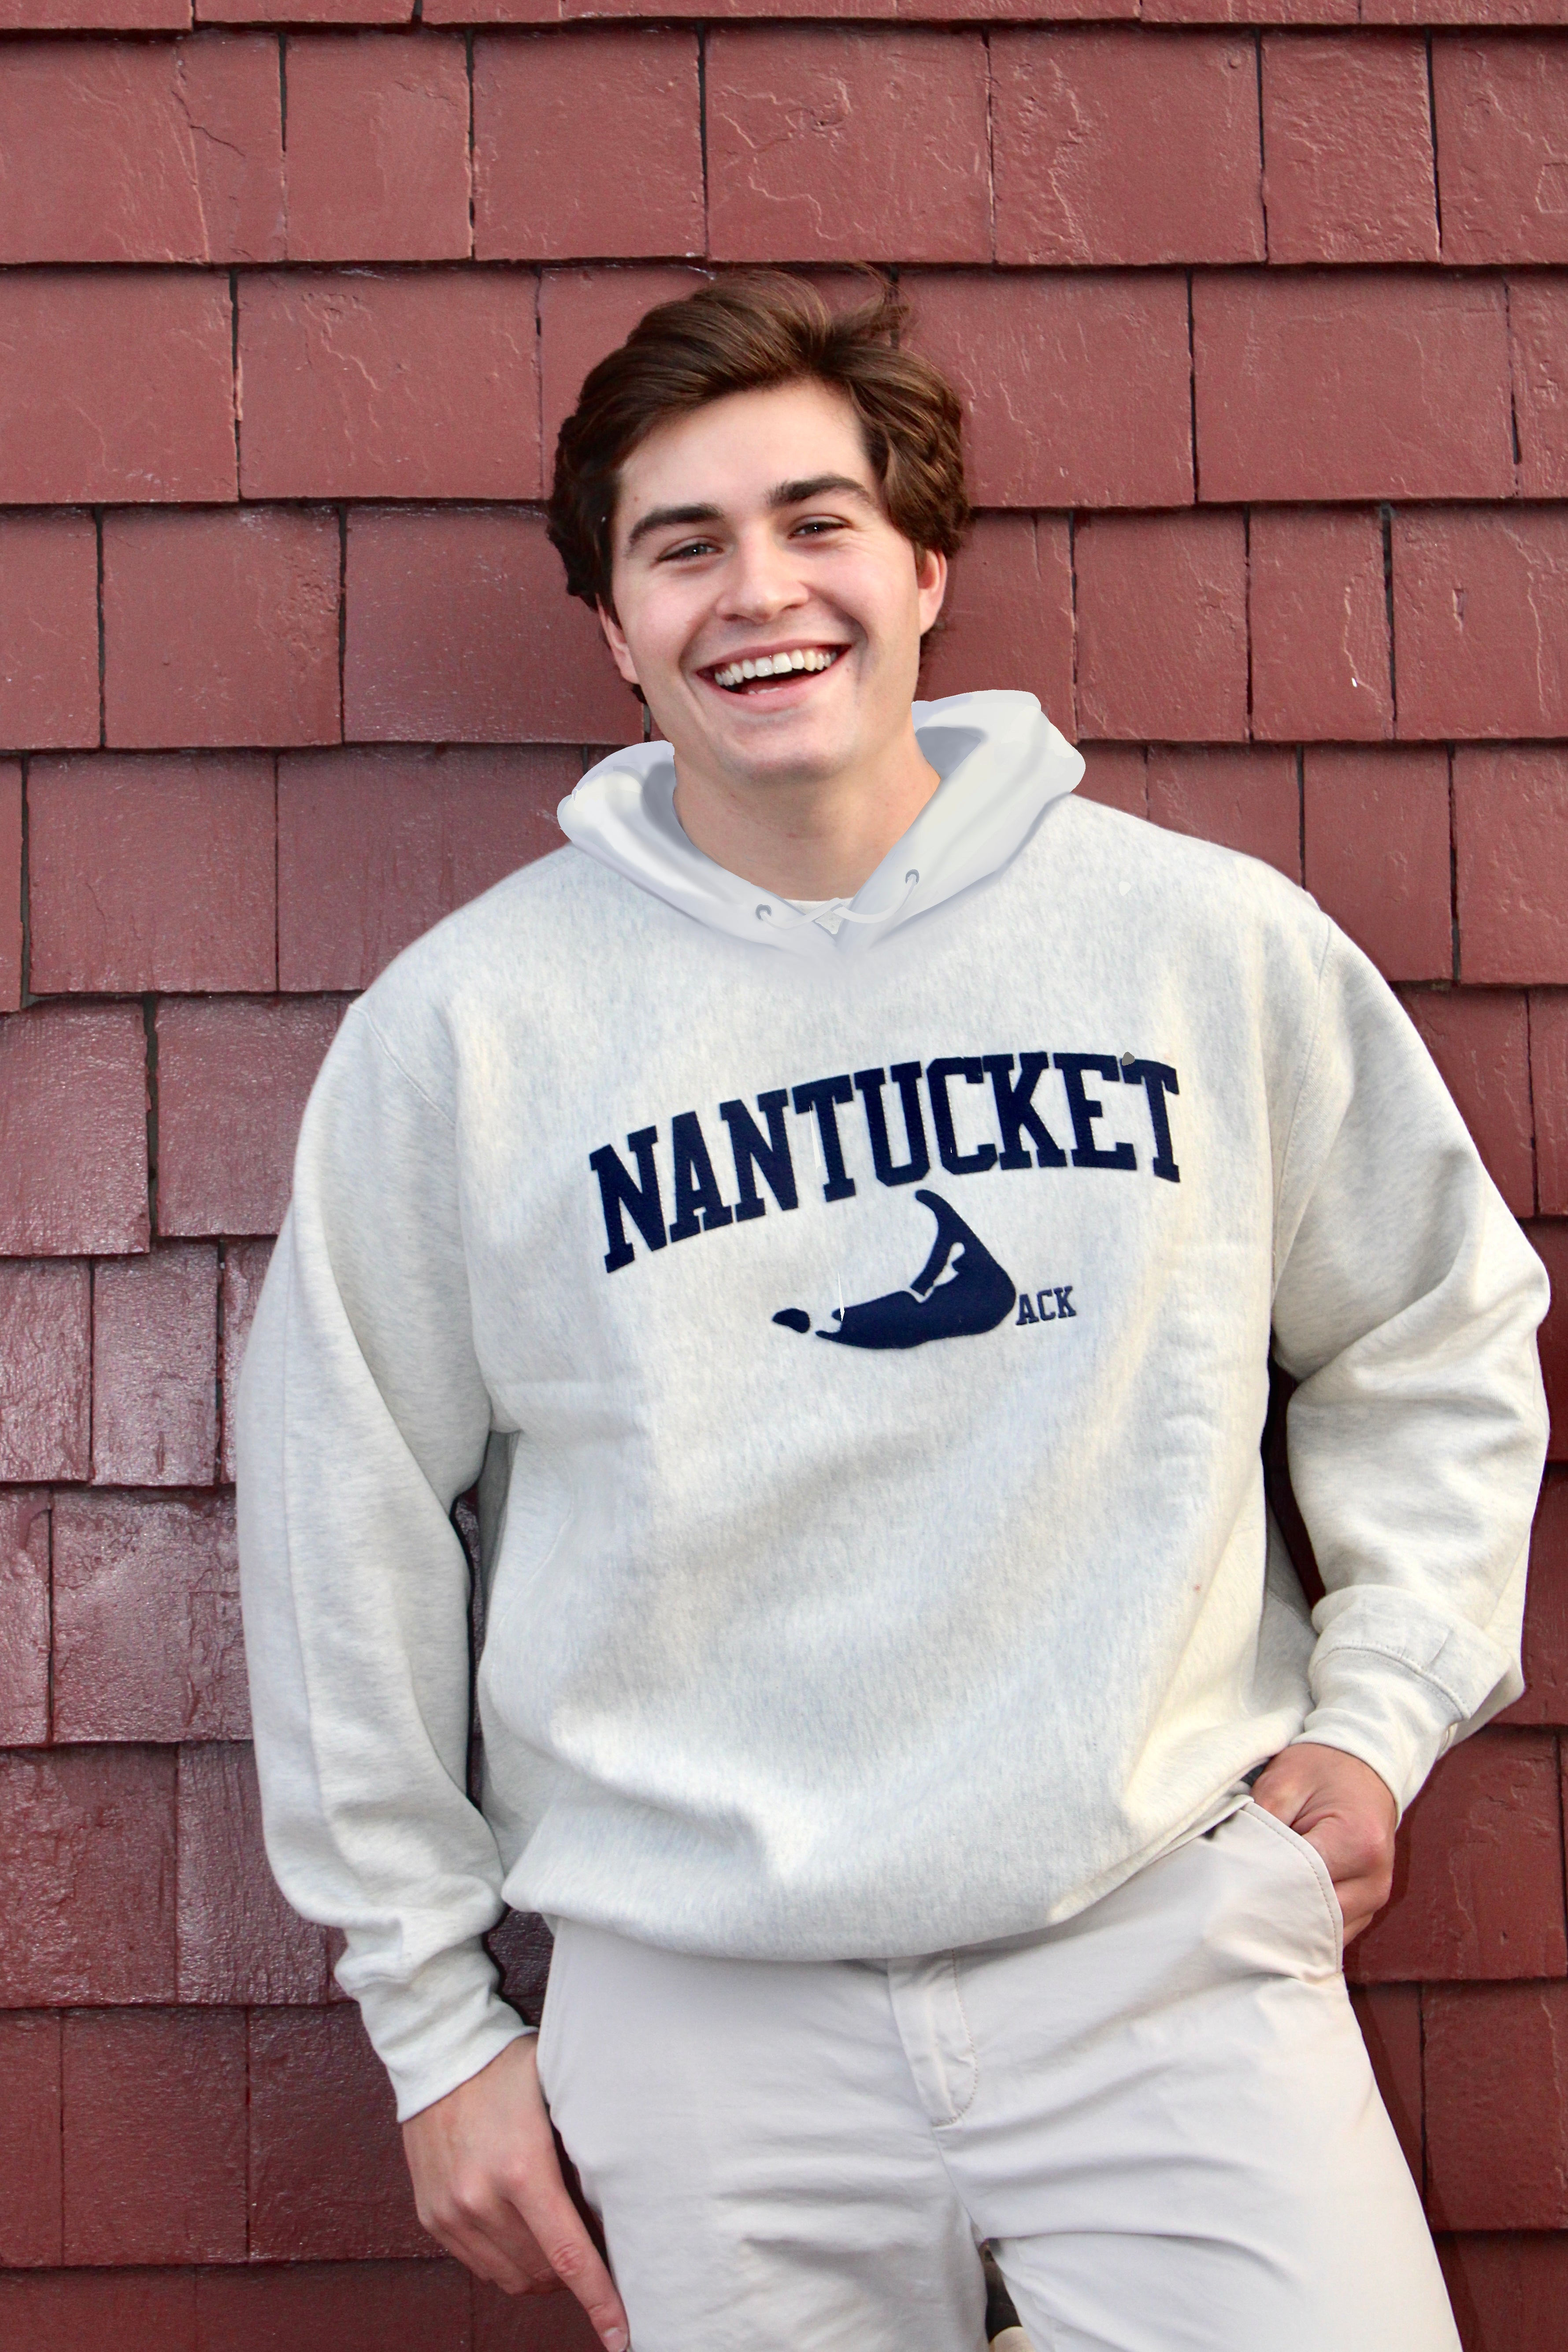 Nantucket sweatshirt – university of nantucket